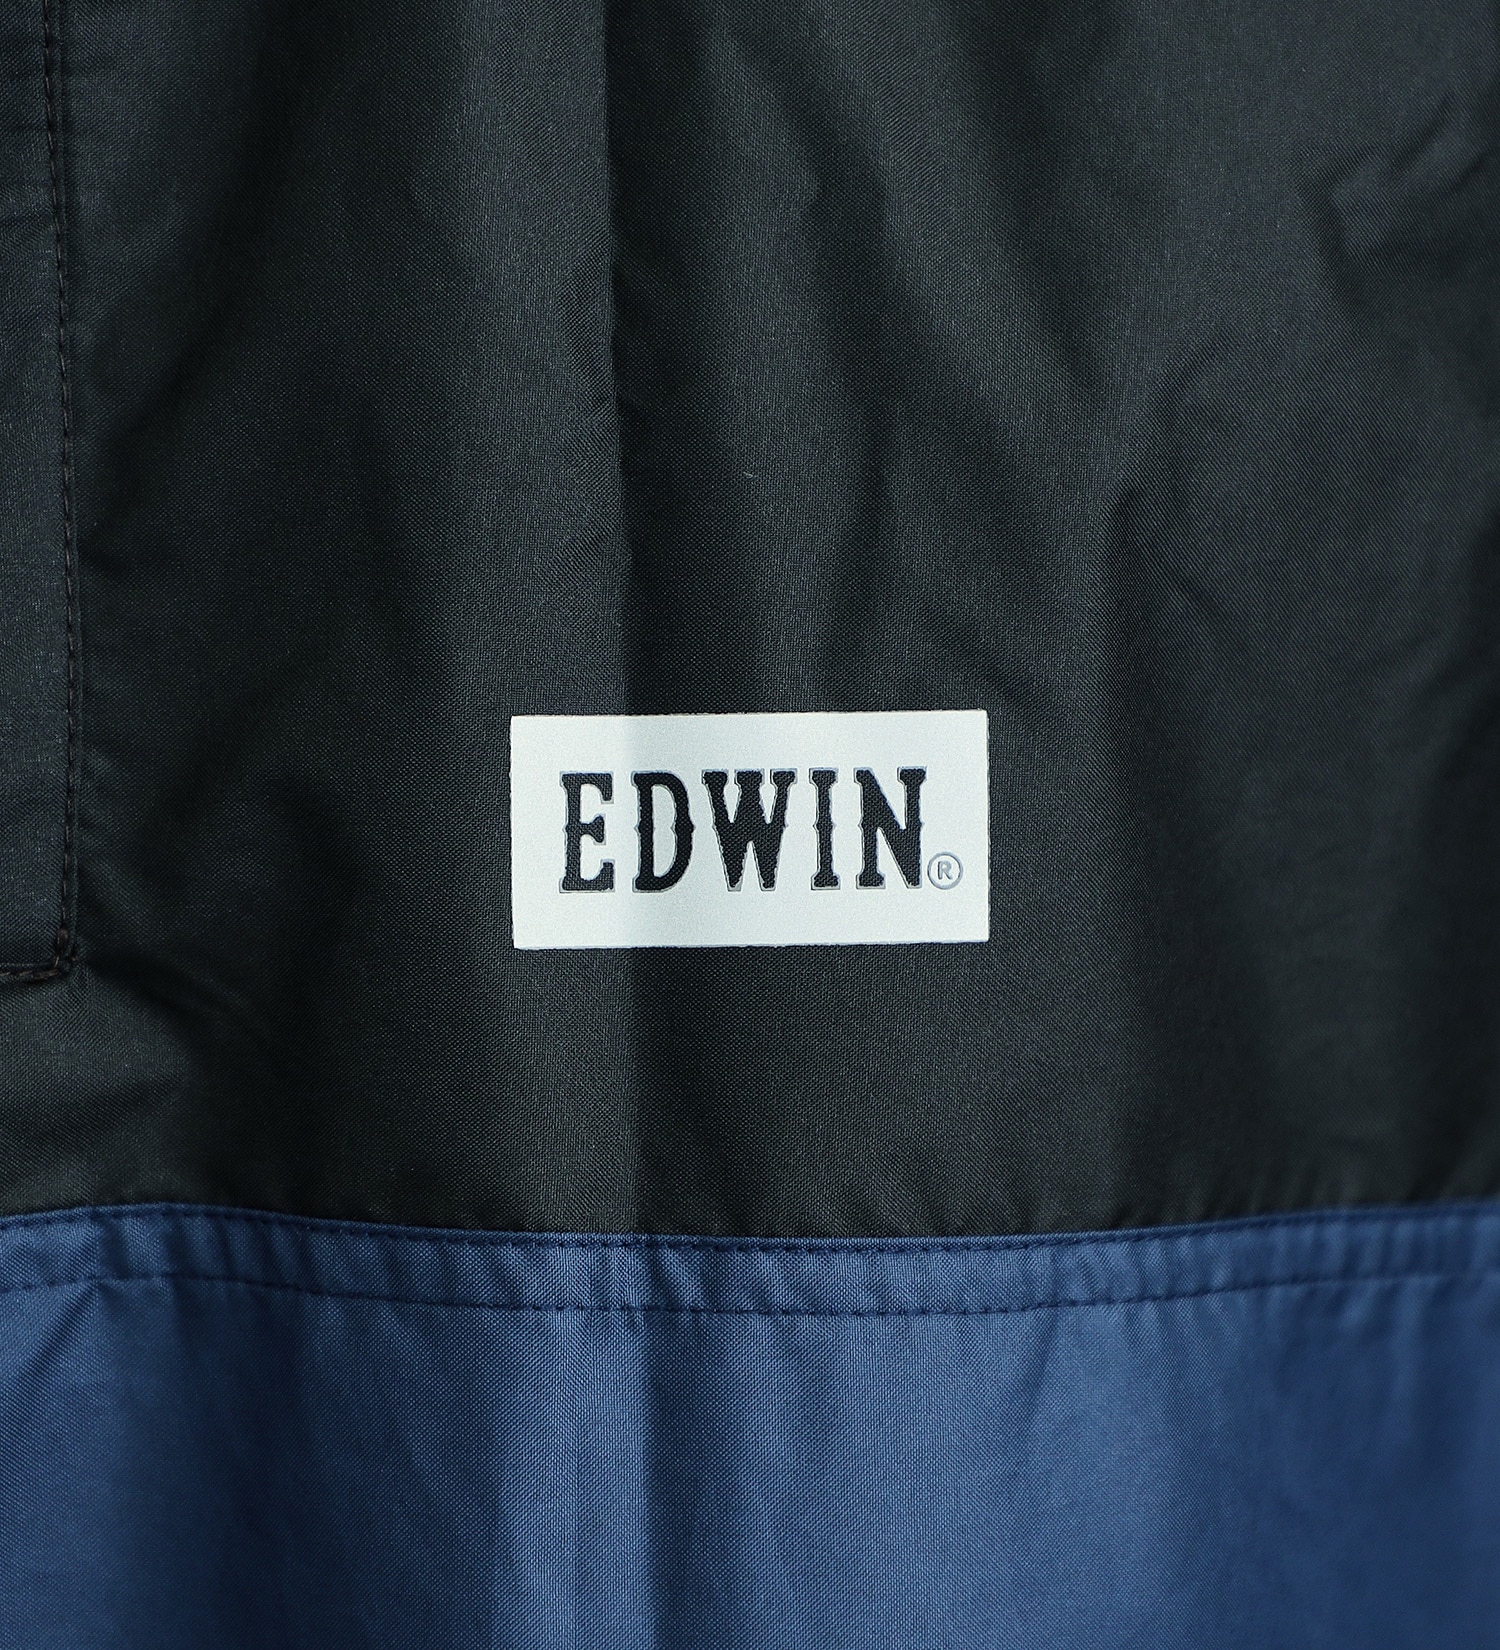 EDWIN(エドウイン)のEDWIN レインポンチョ|ファッション雑貨/レインウェア/ポンチョ/メンズ|ネイビー